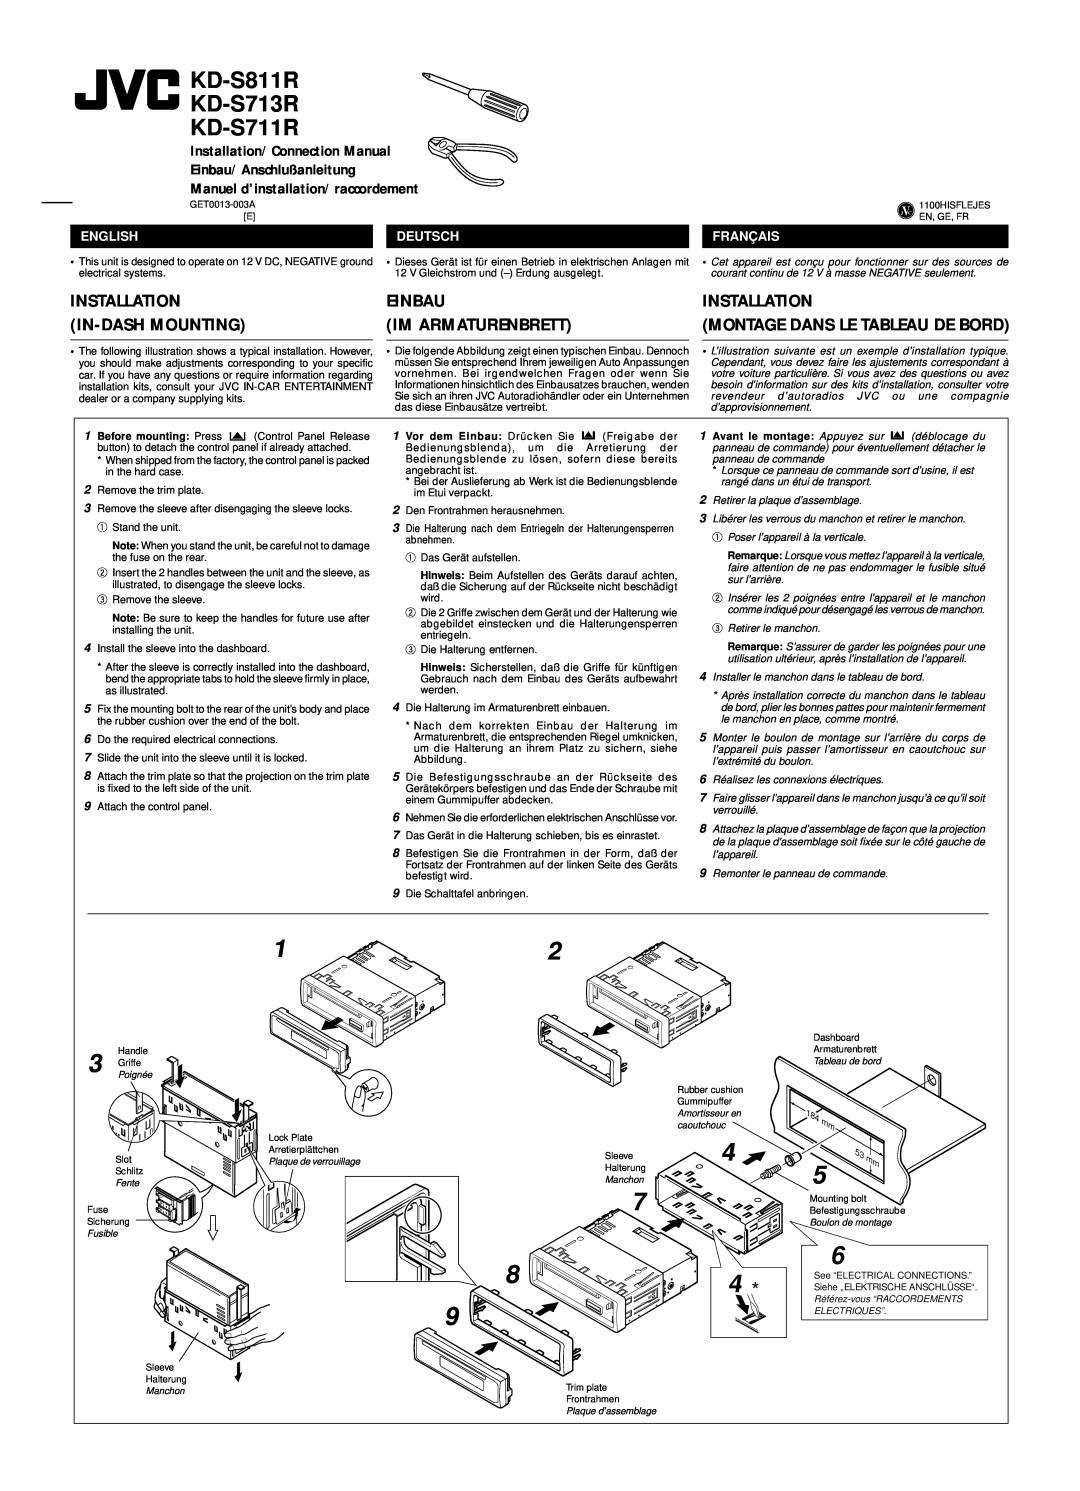 JVC manual KD-S811R KD-S713R KD-S711R, Einbau Im Armaturenbrett, Installation, English, Deutsch, Français 